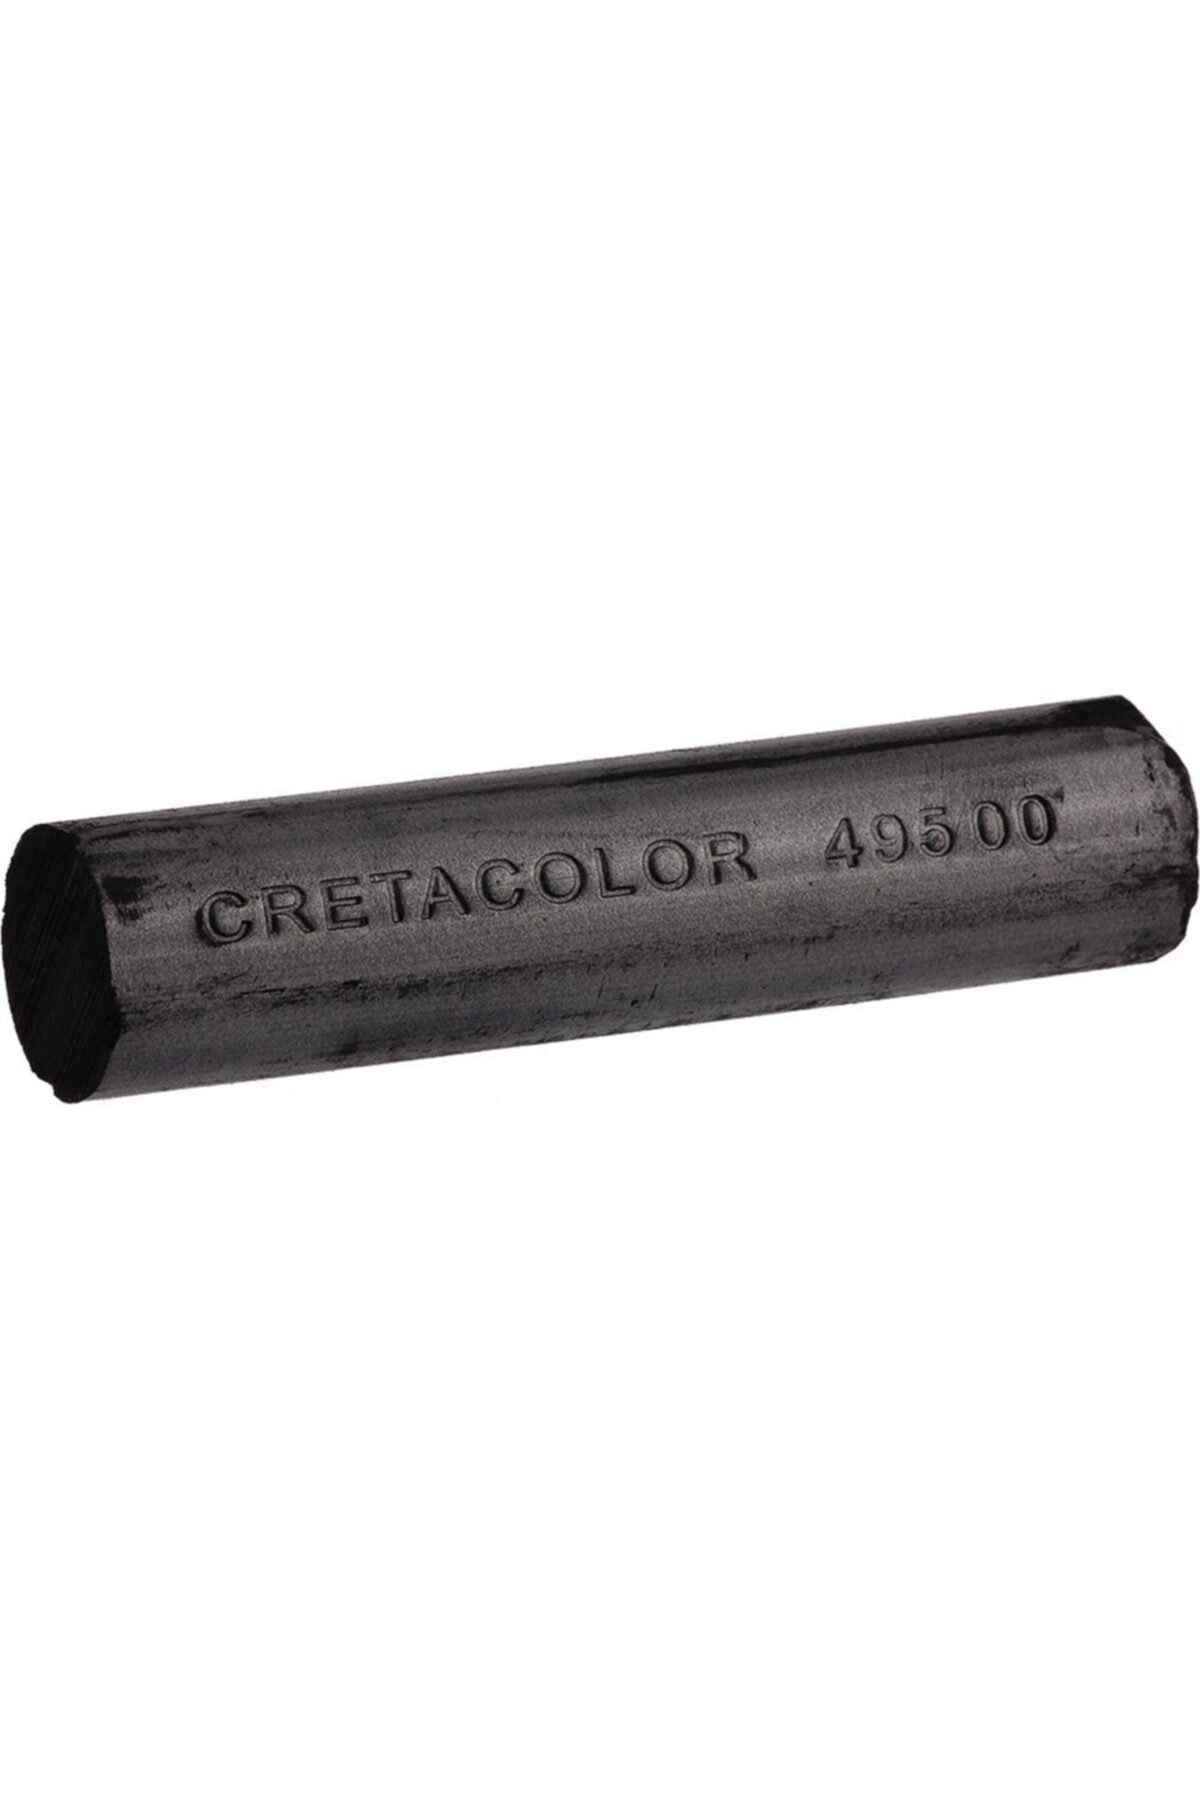 CretaColor Chunky Charcoal (sıkıştırılmış Kalın Kömür Füzen)